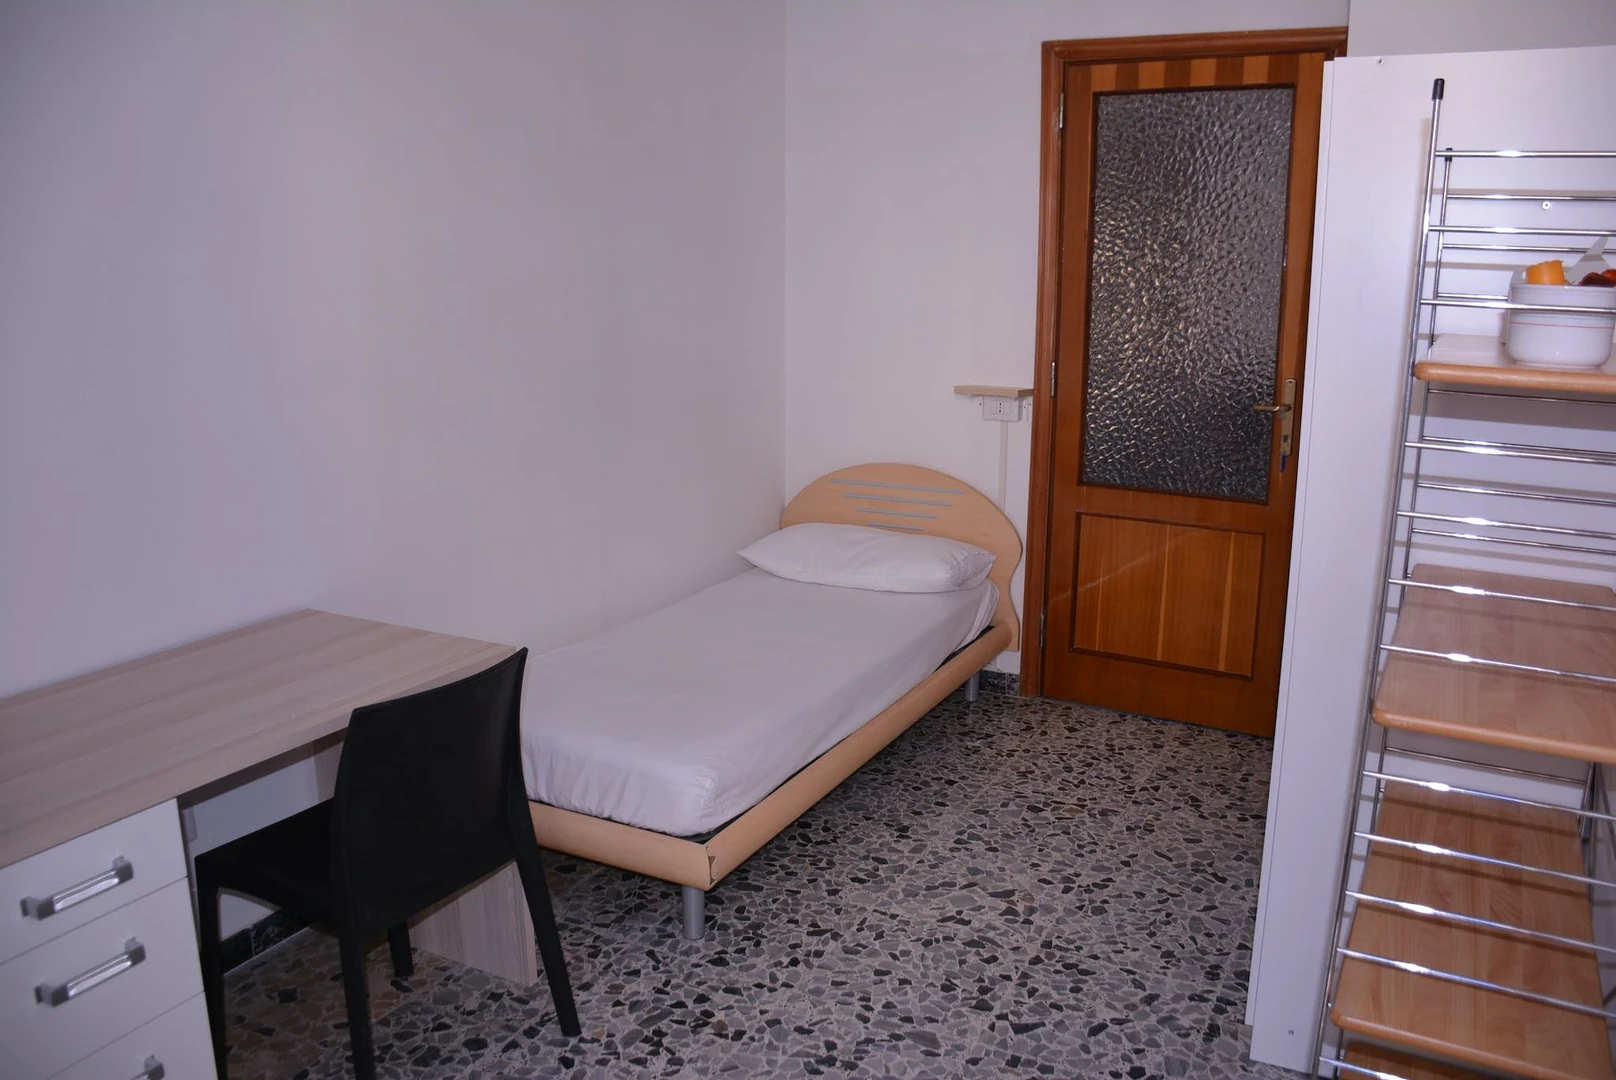 Alquiler de habitaciones por meses en Casteddu/cagliari